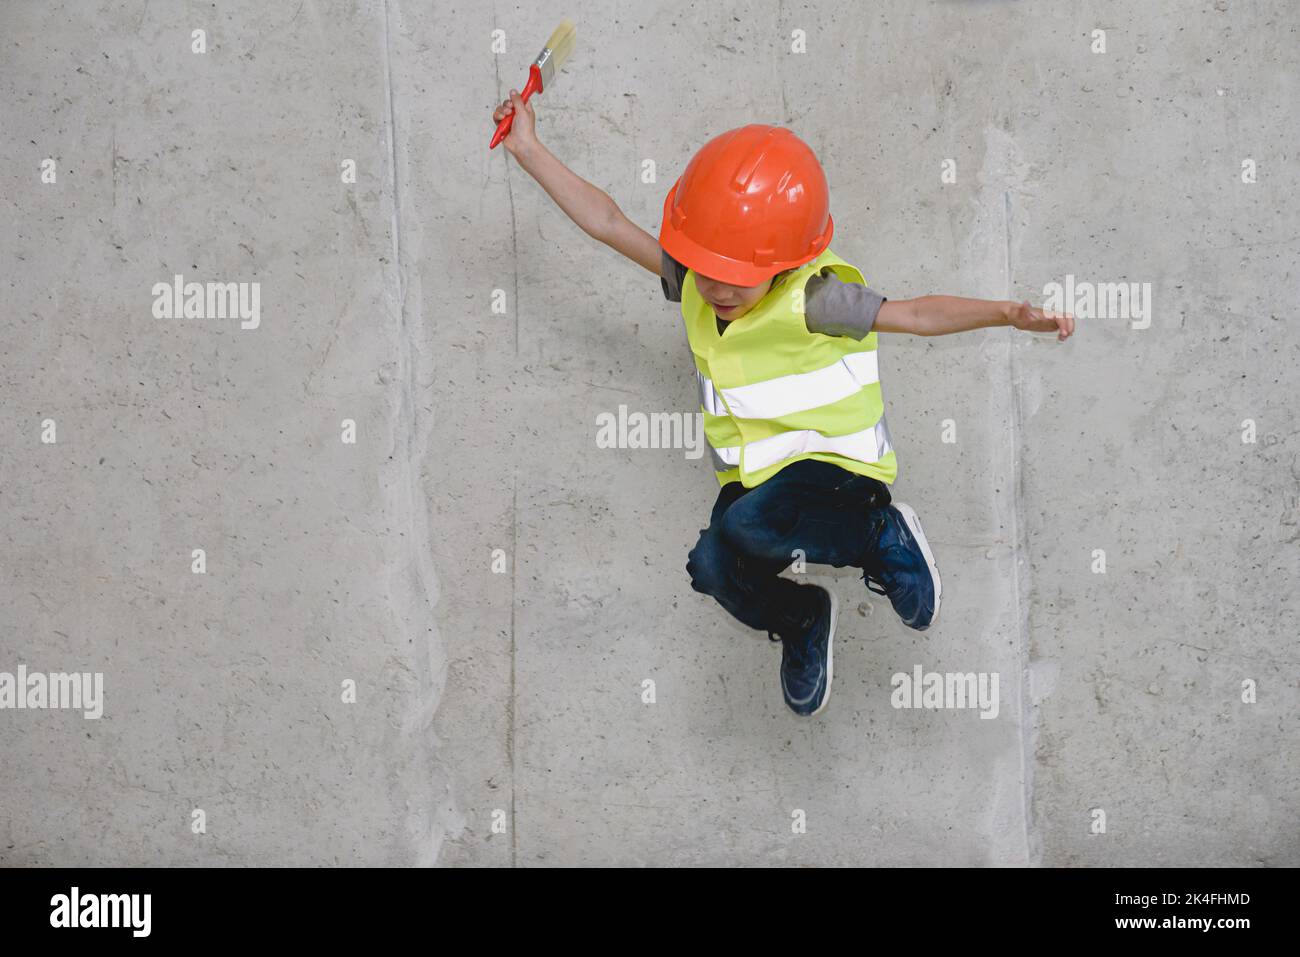 Junge mit Hardhut und Sicherheitsweste, der vor einer Betonwand springt Stockfoto